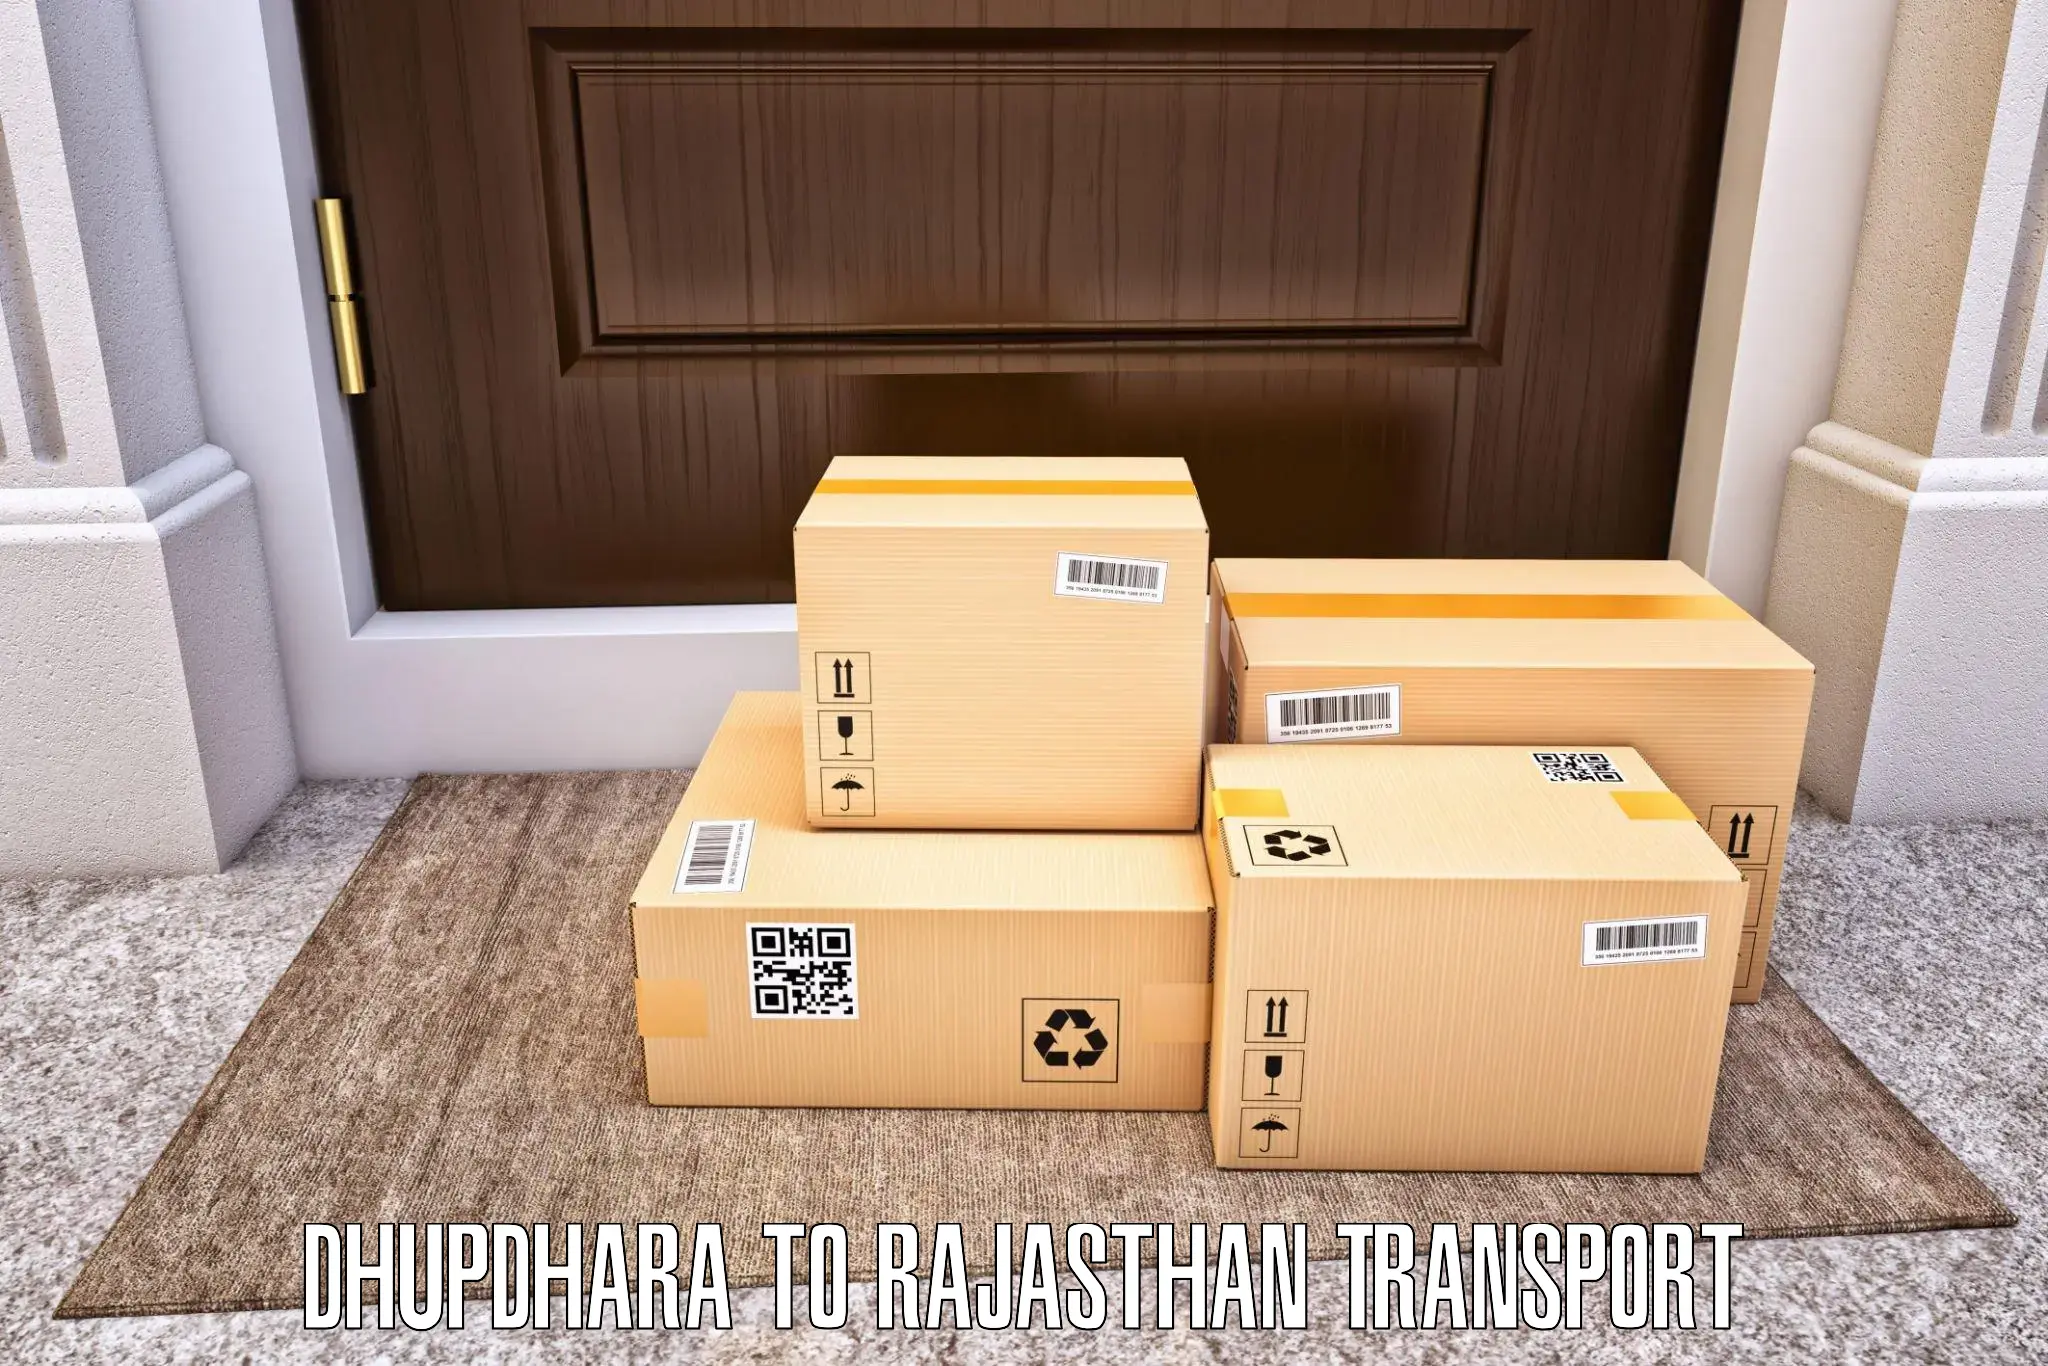 Shipping services in Dhupdhara to Kherwara